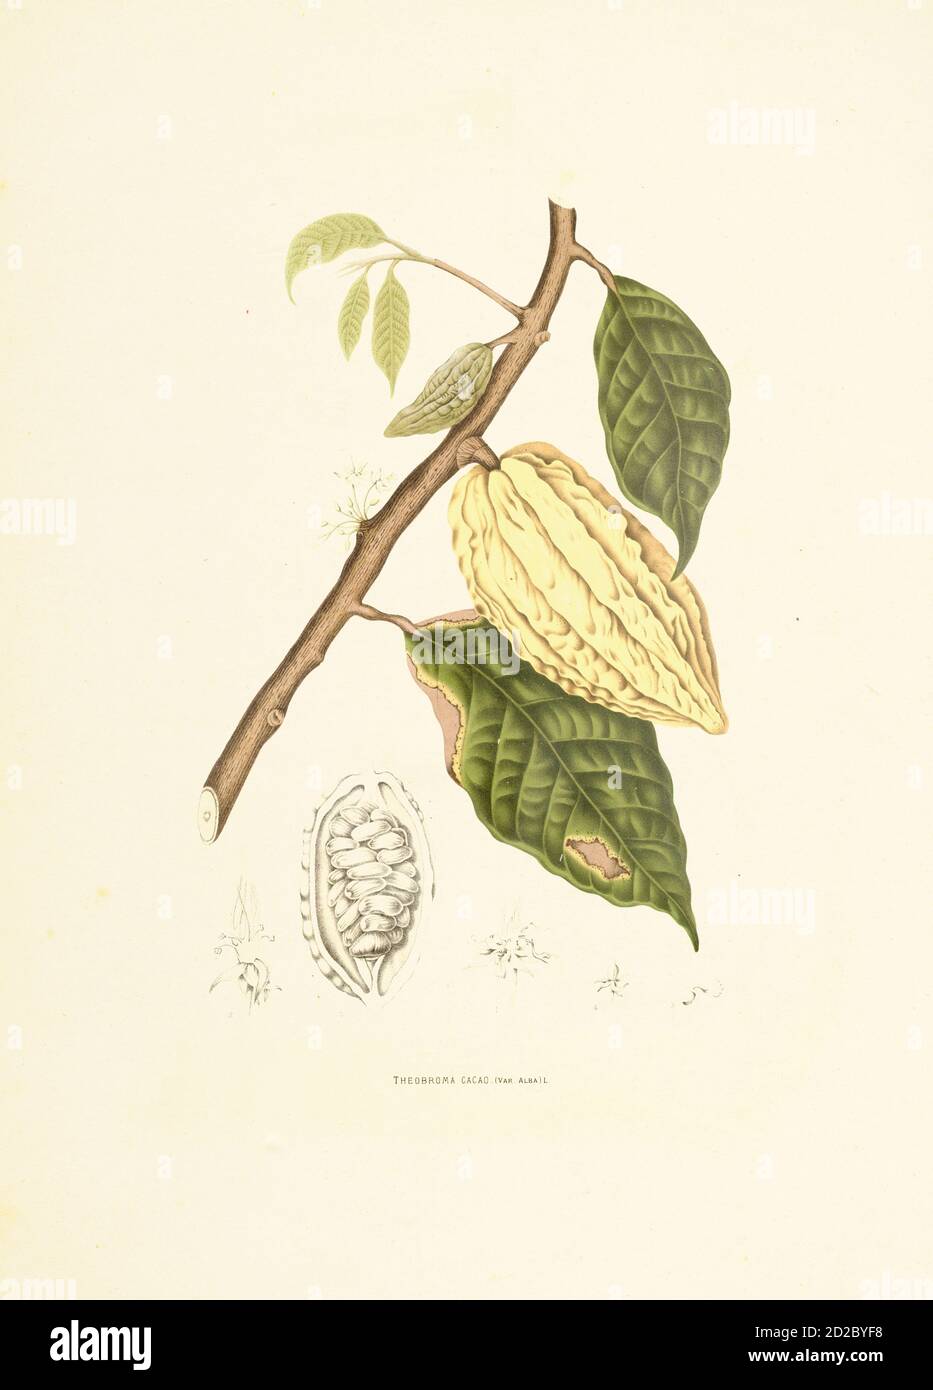 Illustration antique du XIXe siècle d'un theobroma cacao (également connu sous le nom de cacao ou arbre de cacao). Gravure de Berthe Hoola van Nooten du livre FL Banque D'Images